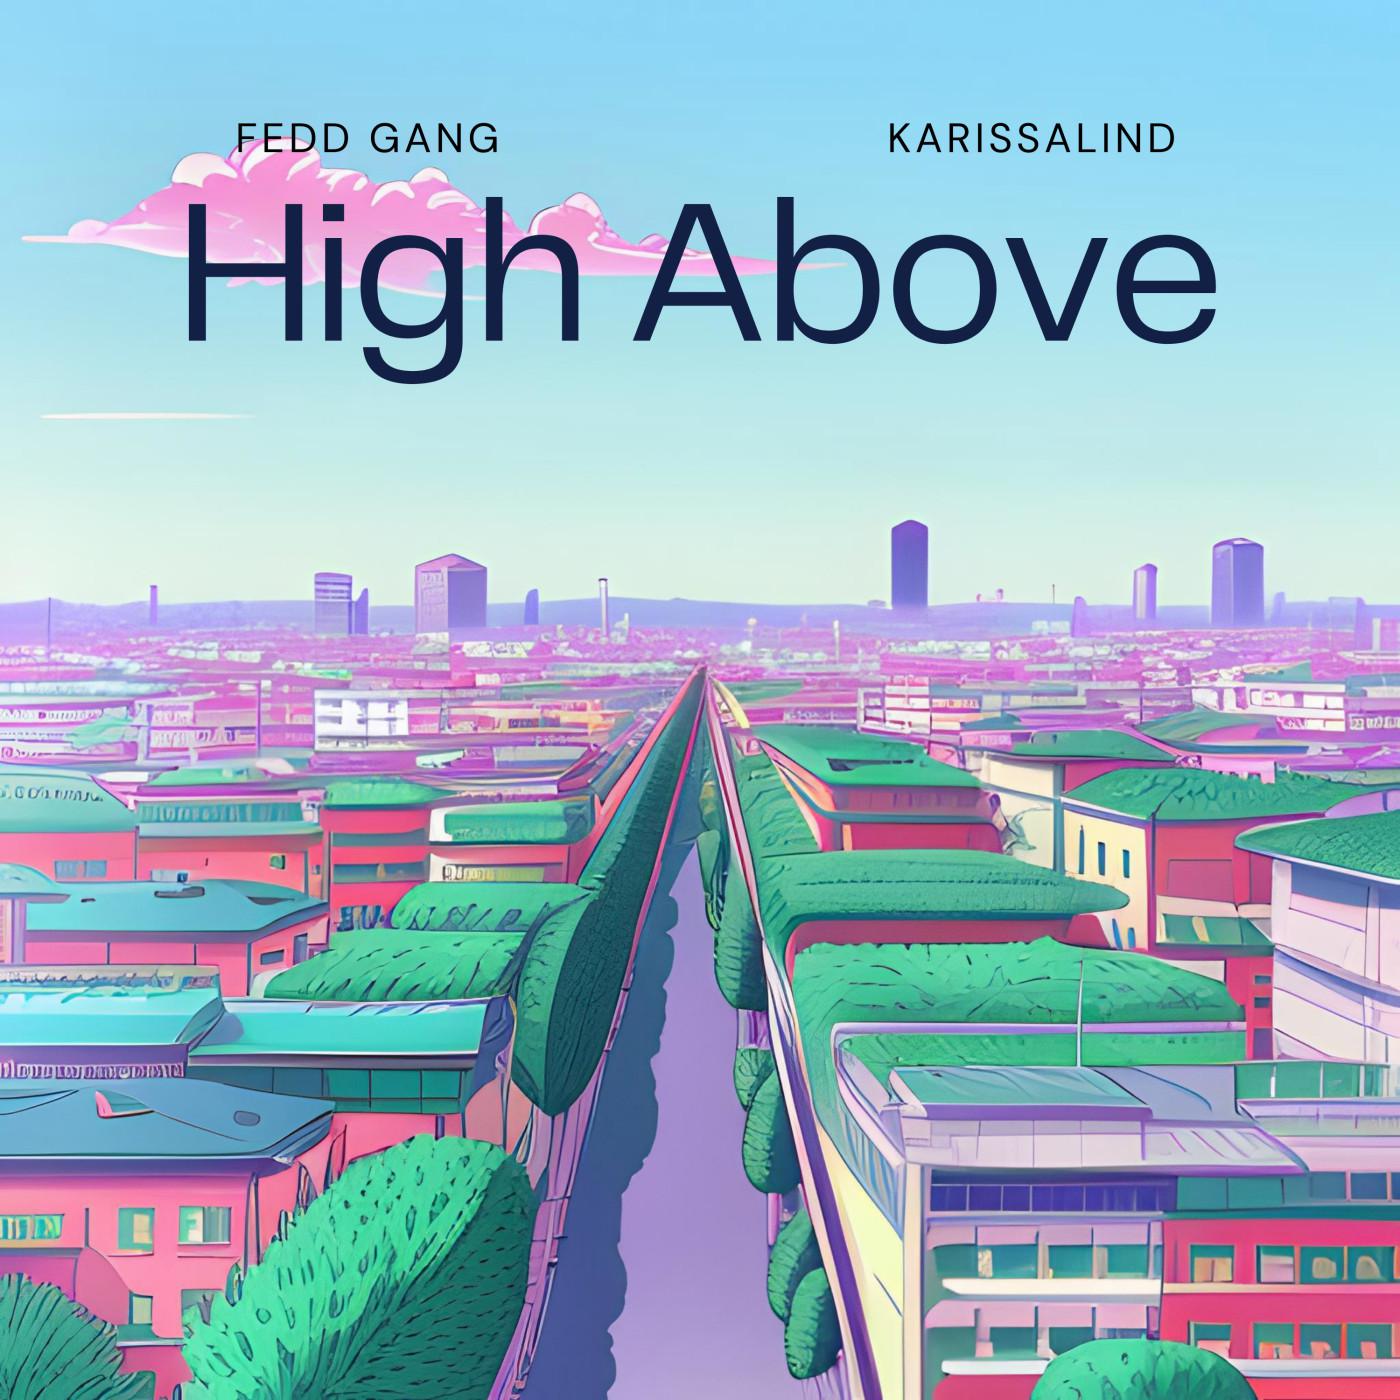 Fedd Gang - High Above (feat. Karissalind)